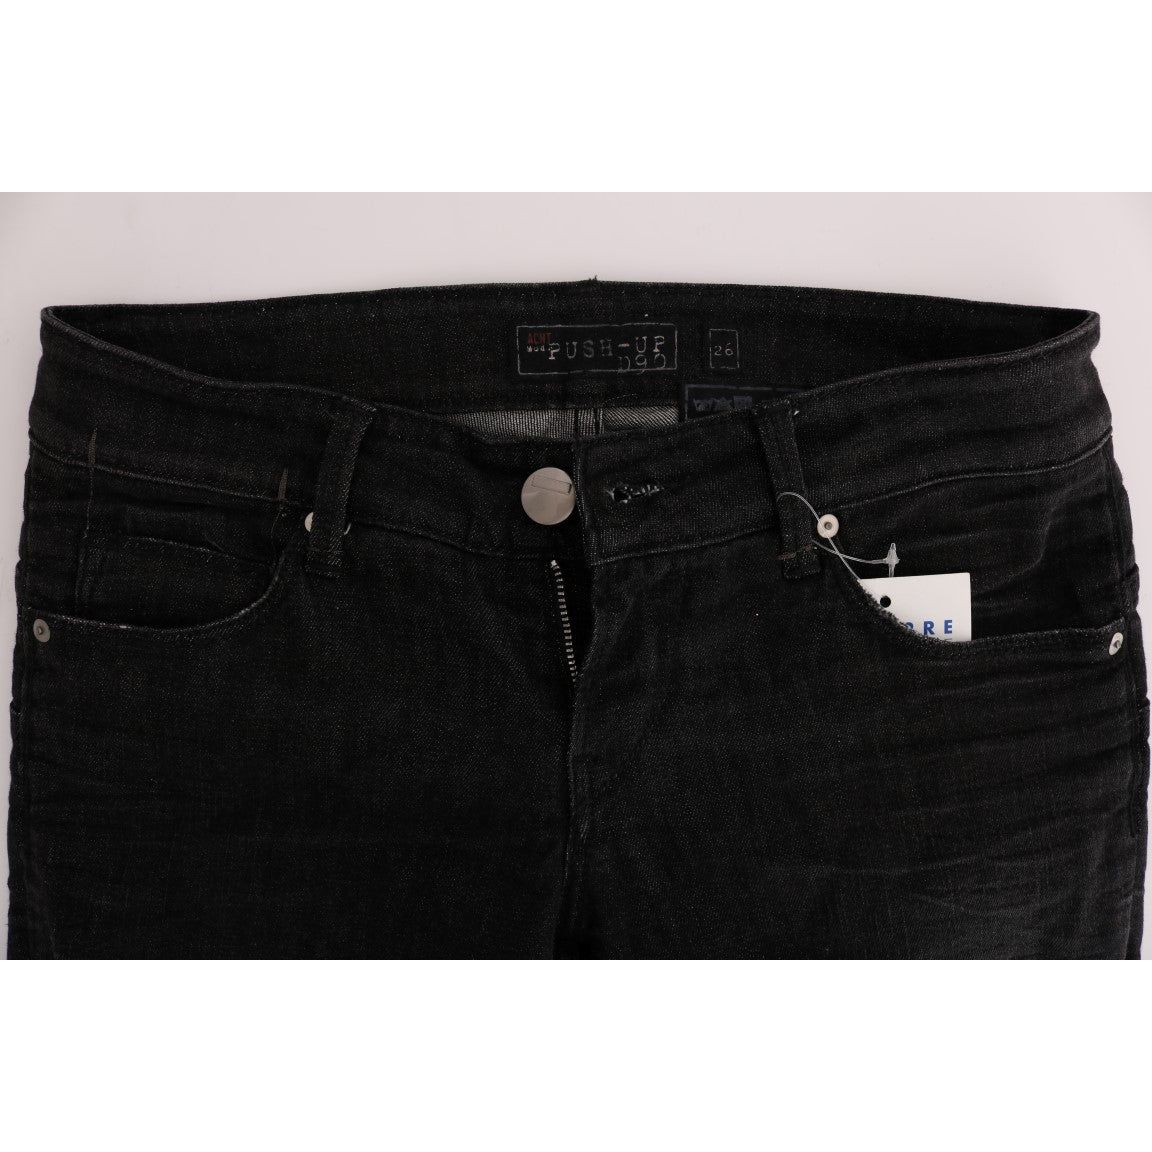 Acht Chic Slim Fit Black Cotton Jeans Jeans & Pants black-denim-cotton-bottoms-slim-fit-jeans 449507-black-denim-cotton-bottoms-slim-fit-jeans-4.jpg